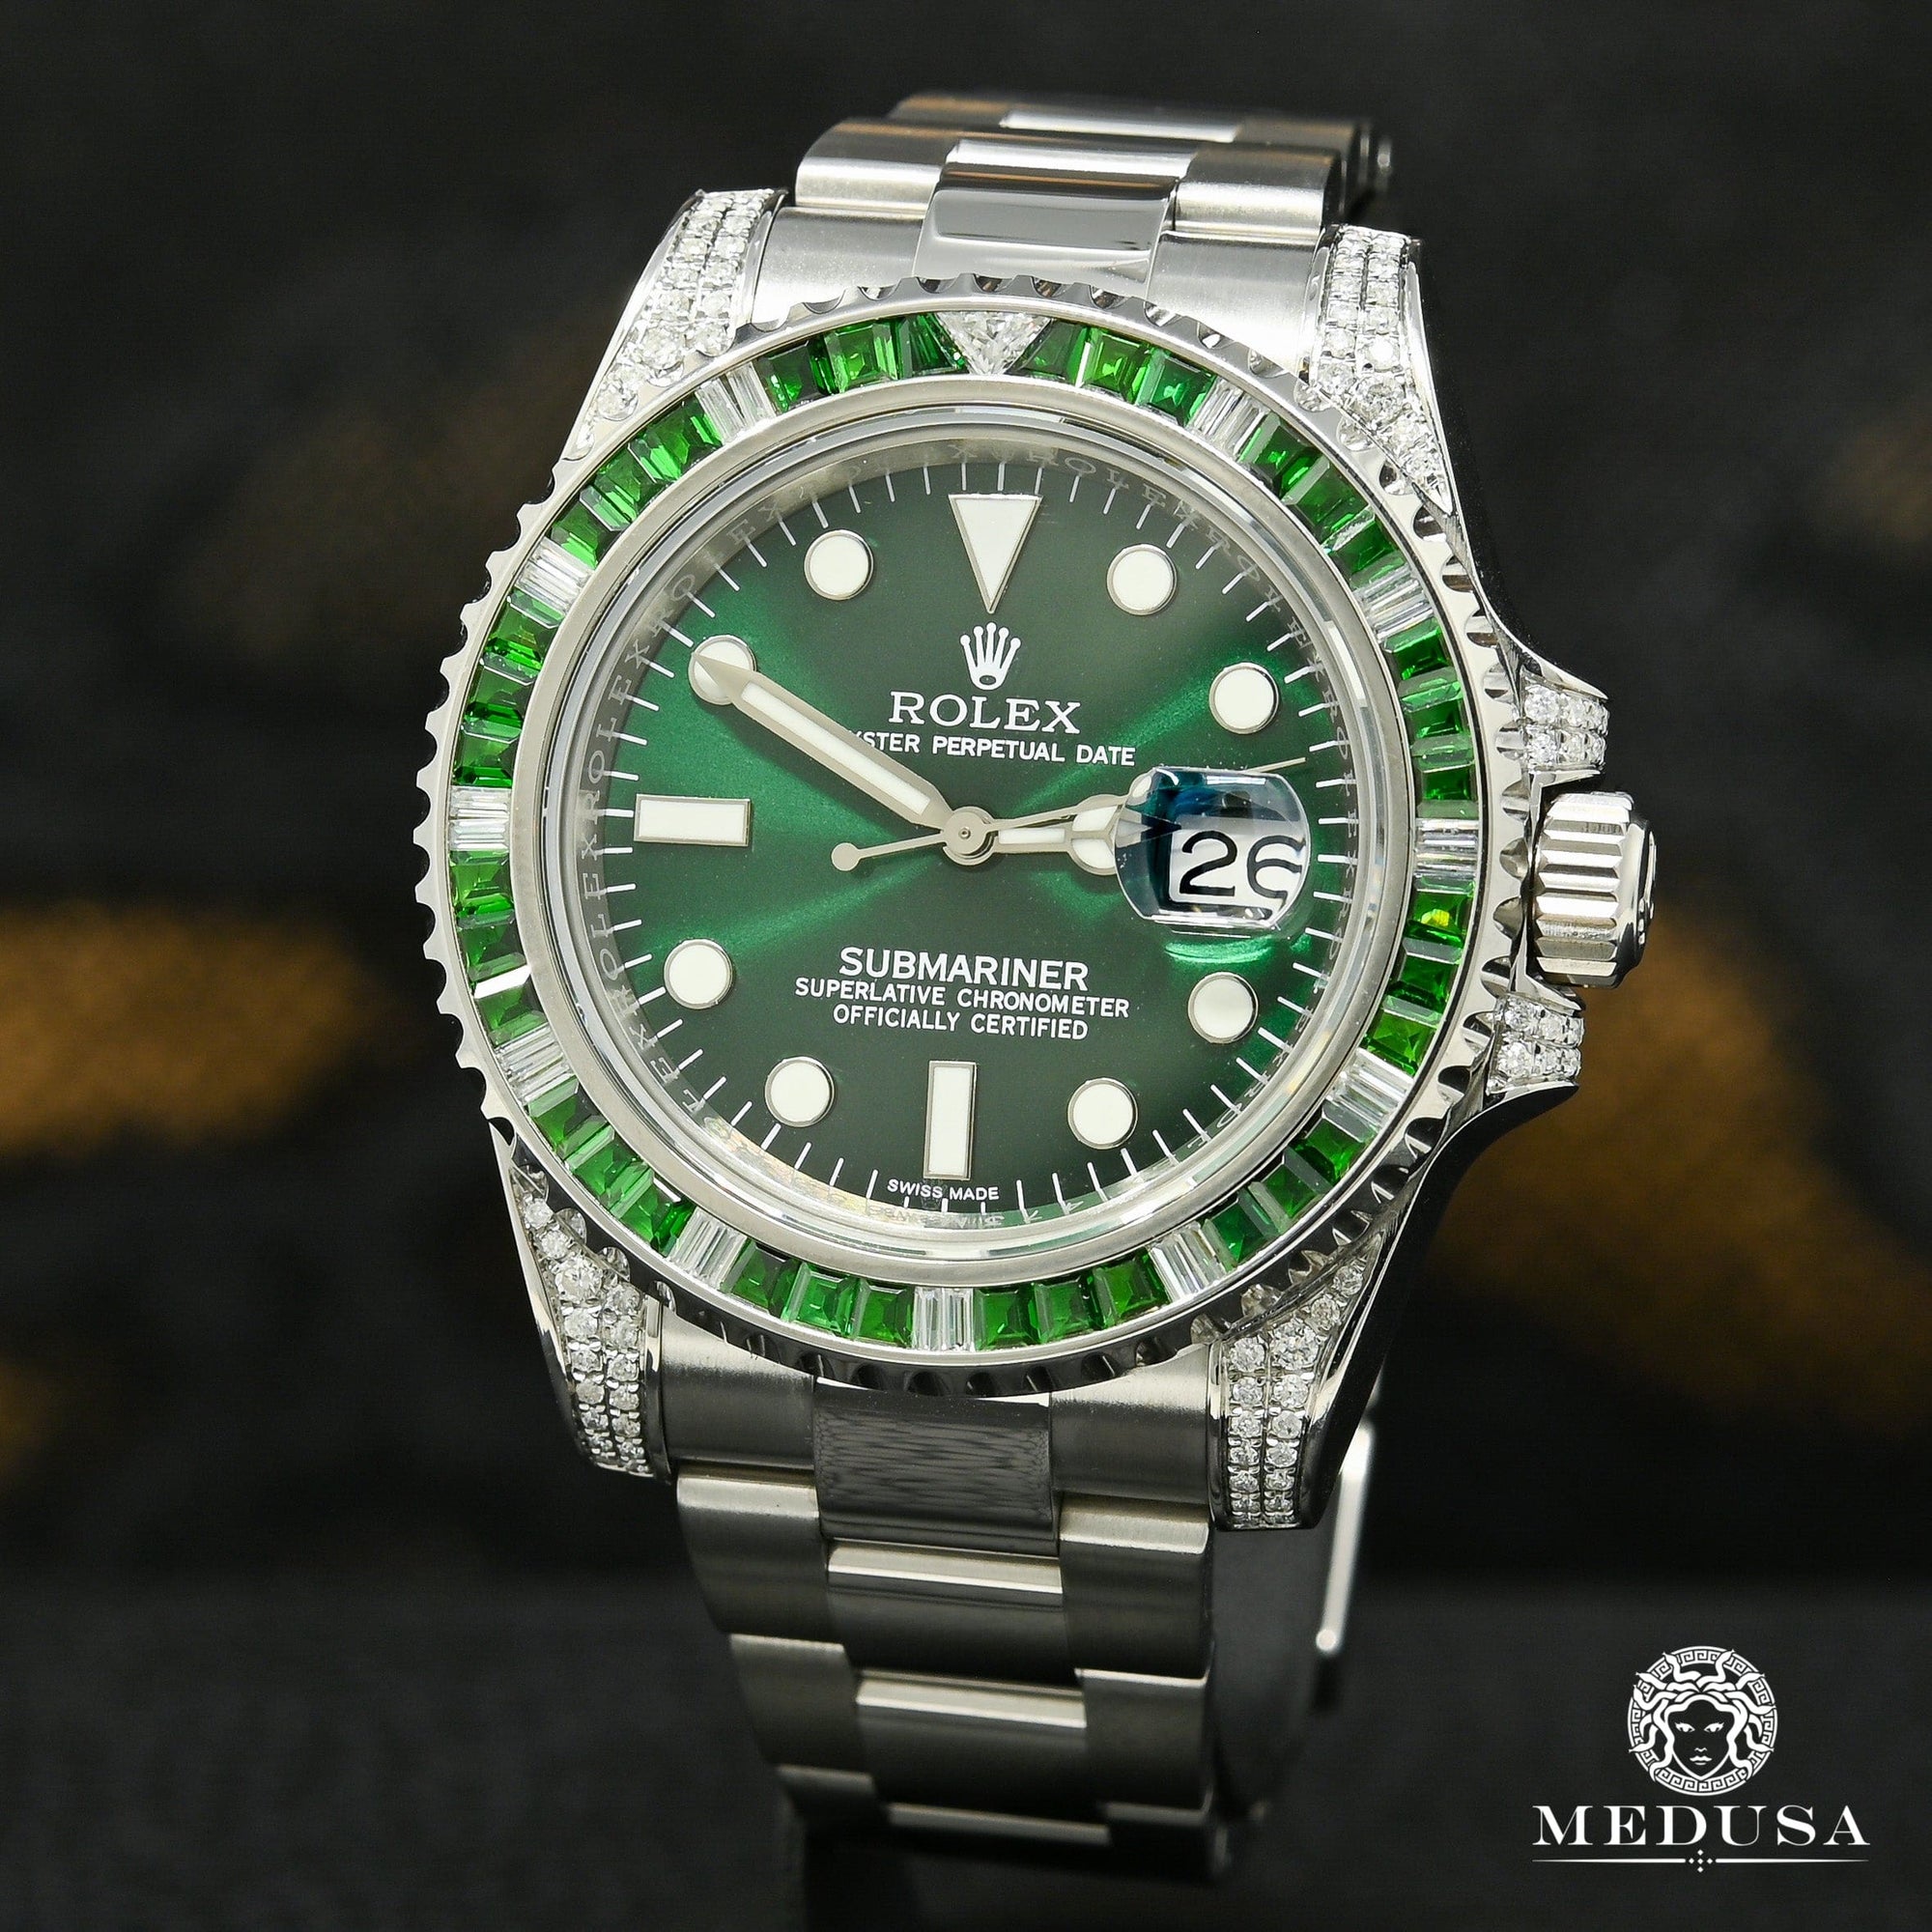 Rolex watch | Rolex Submariner 40mm Men's Watch - Green Diamond & Emerald Stainless